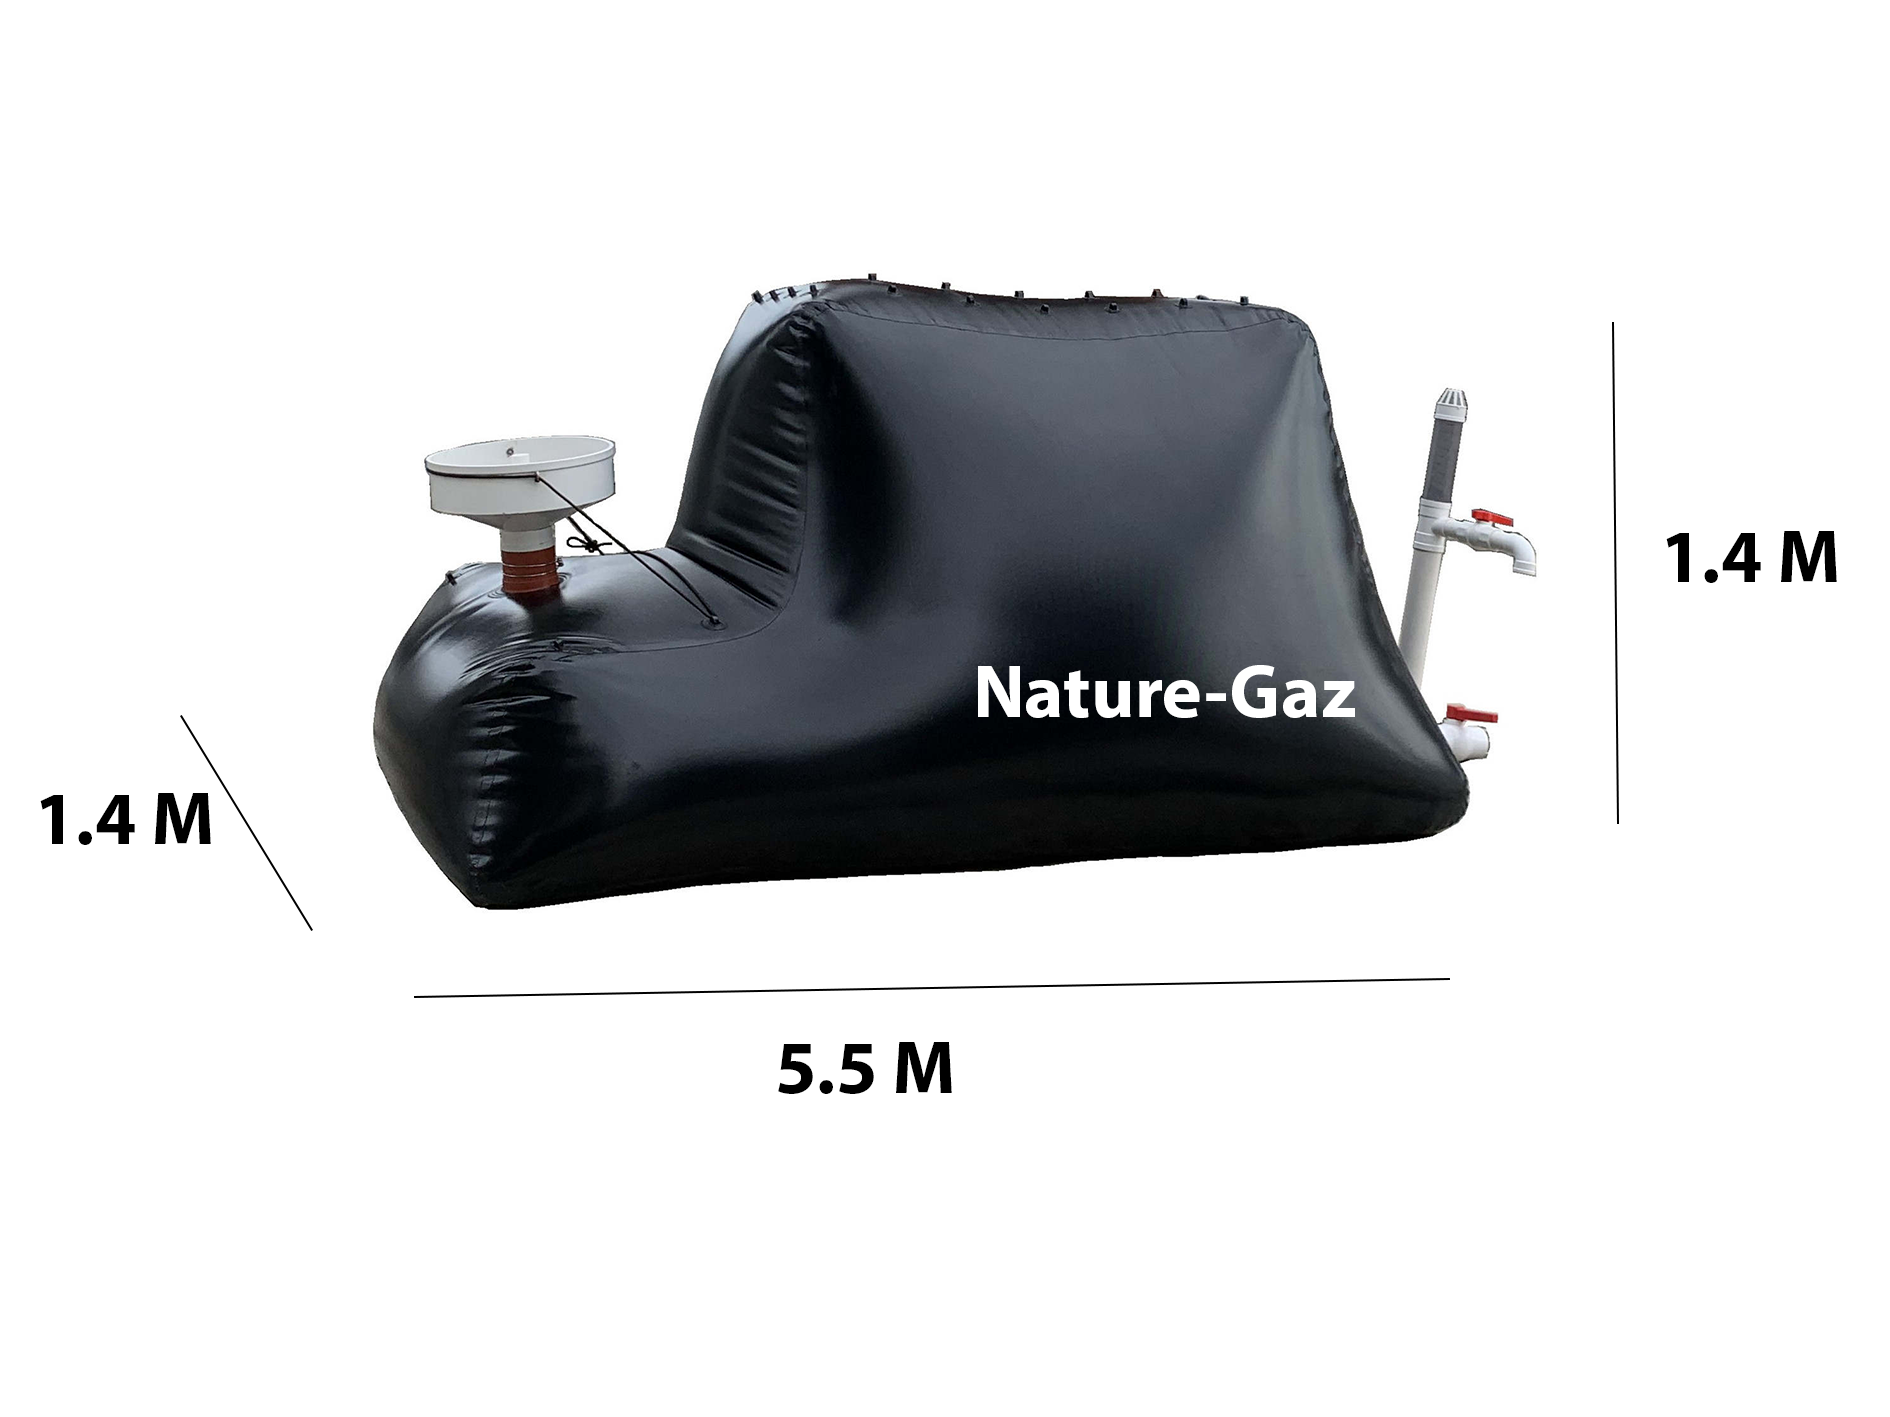 Méthaniseur domestique  Nature gaz 10 m3 avec réchaud, production de biogaz. Biodigesteur